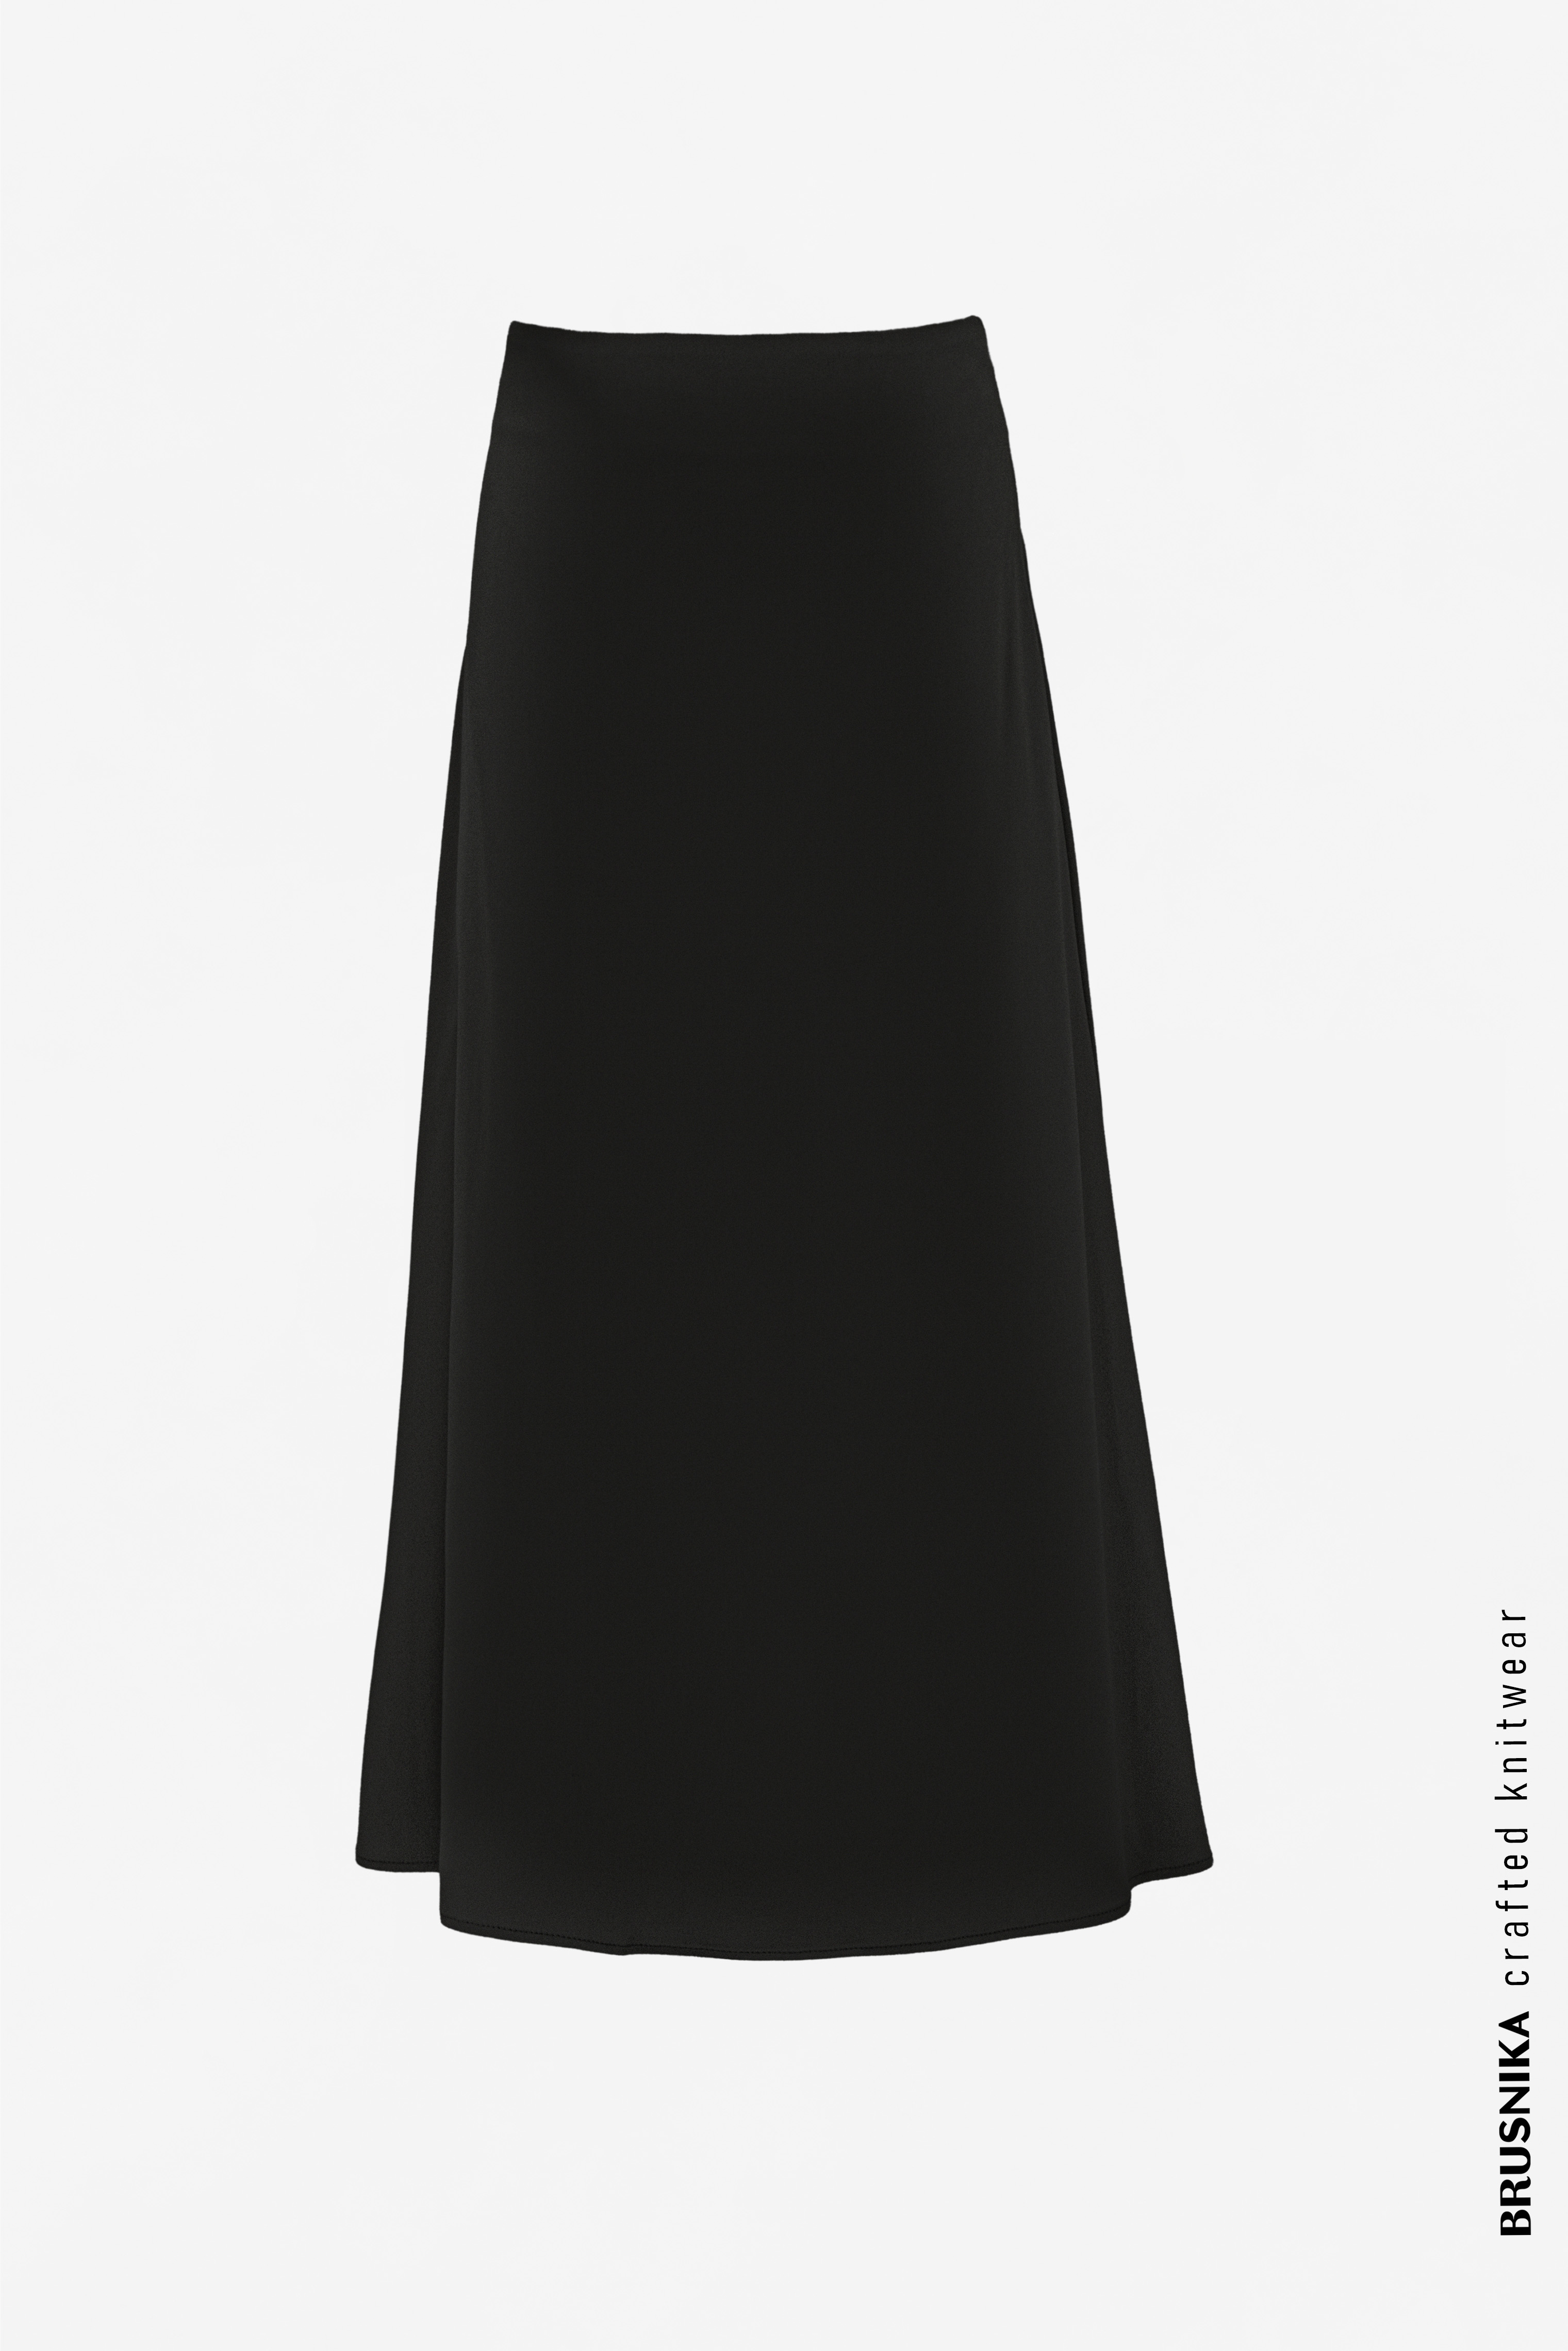 Skirt 3723-01 Black from BRUSNiKA